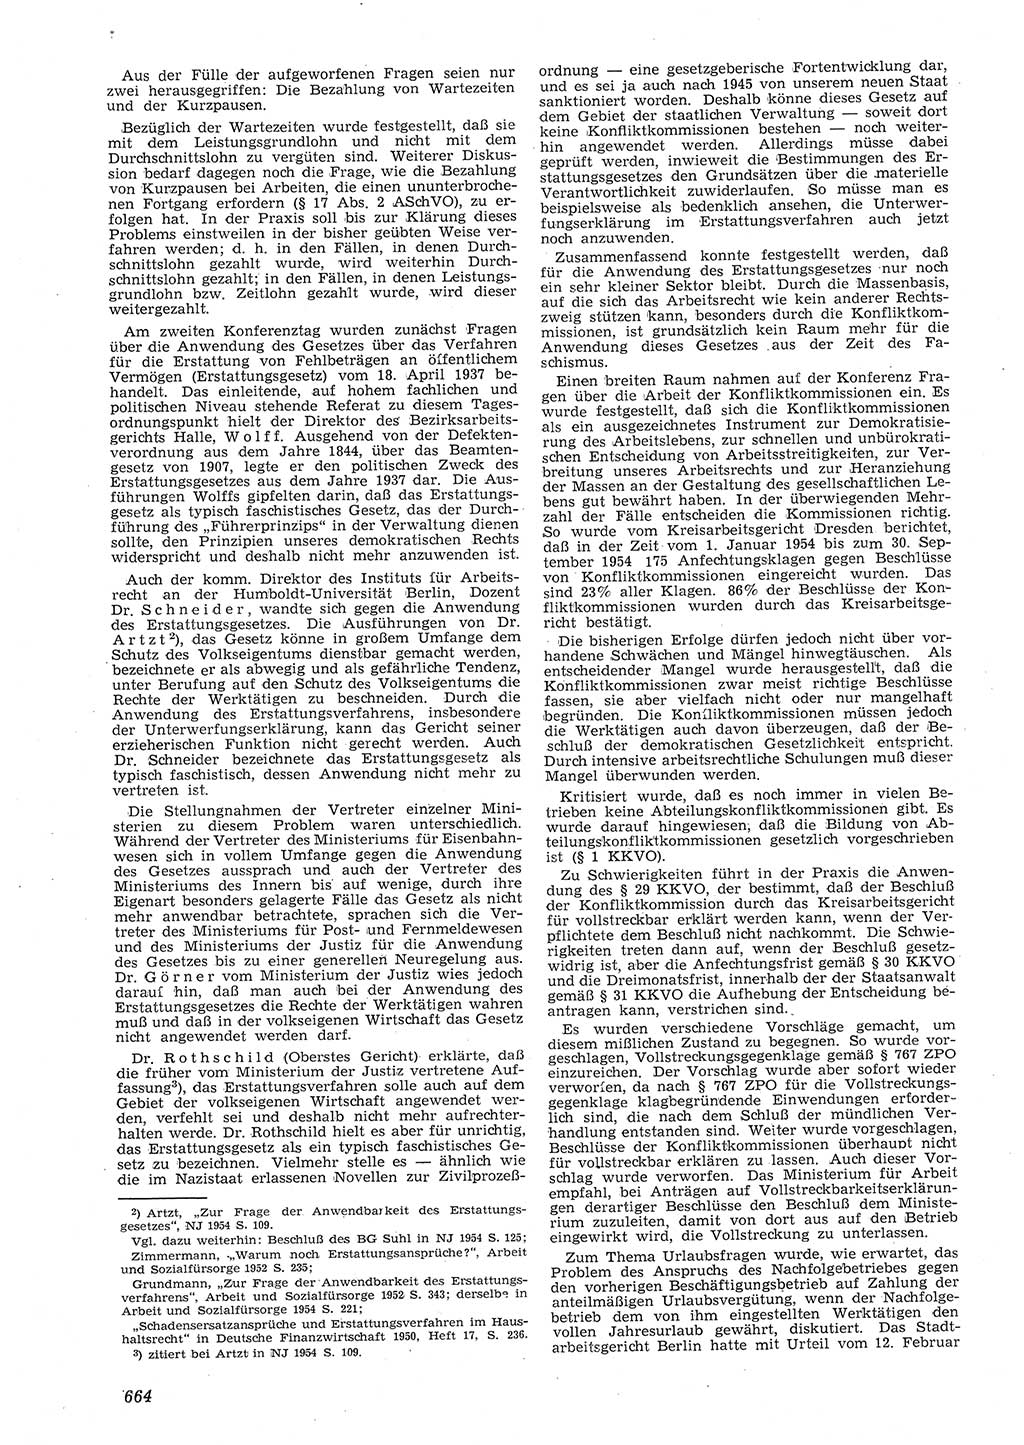 Neue Justiz (NJ), Zeitschrift für Recht und Rechtswissenschaft [Deutsche Demokratische Republik (DDR)], 8. Jahrgang 1954, Seite 664 (NJ DDR 1954, S. 664)